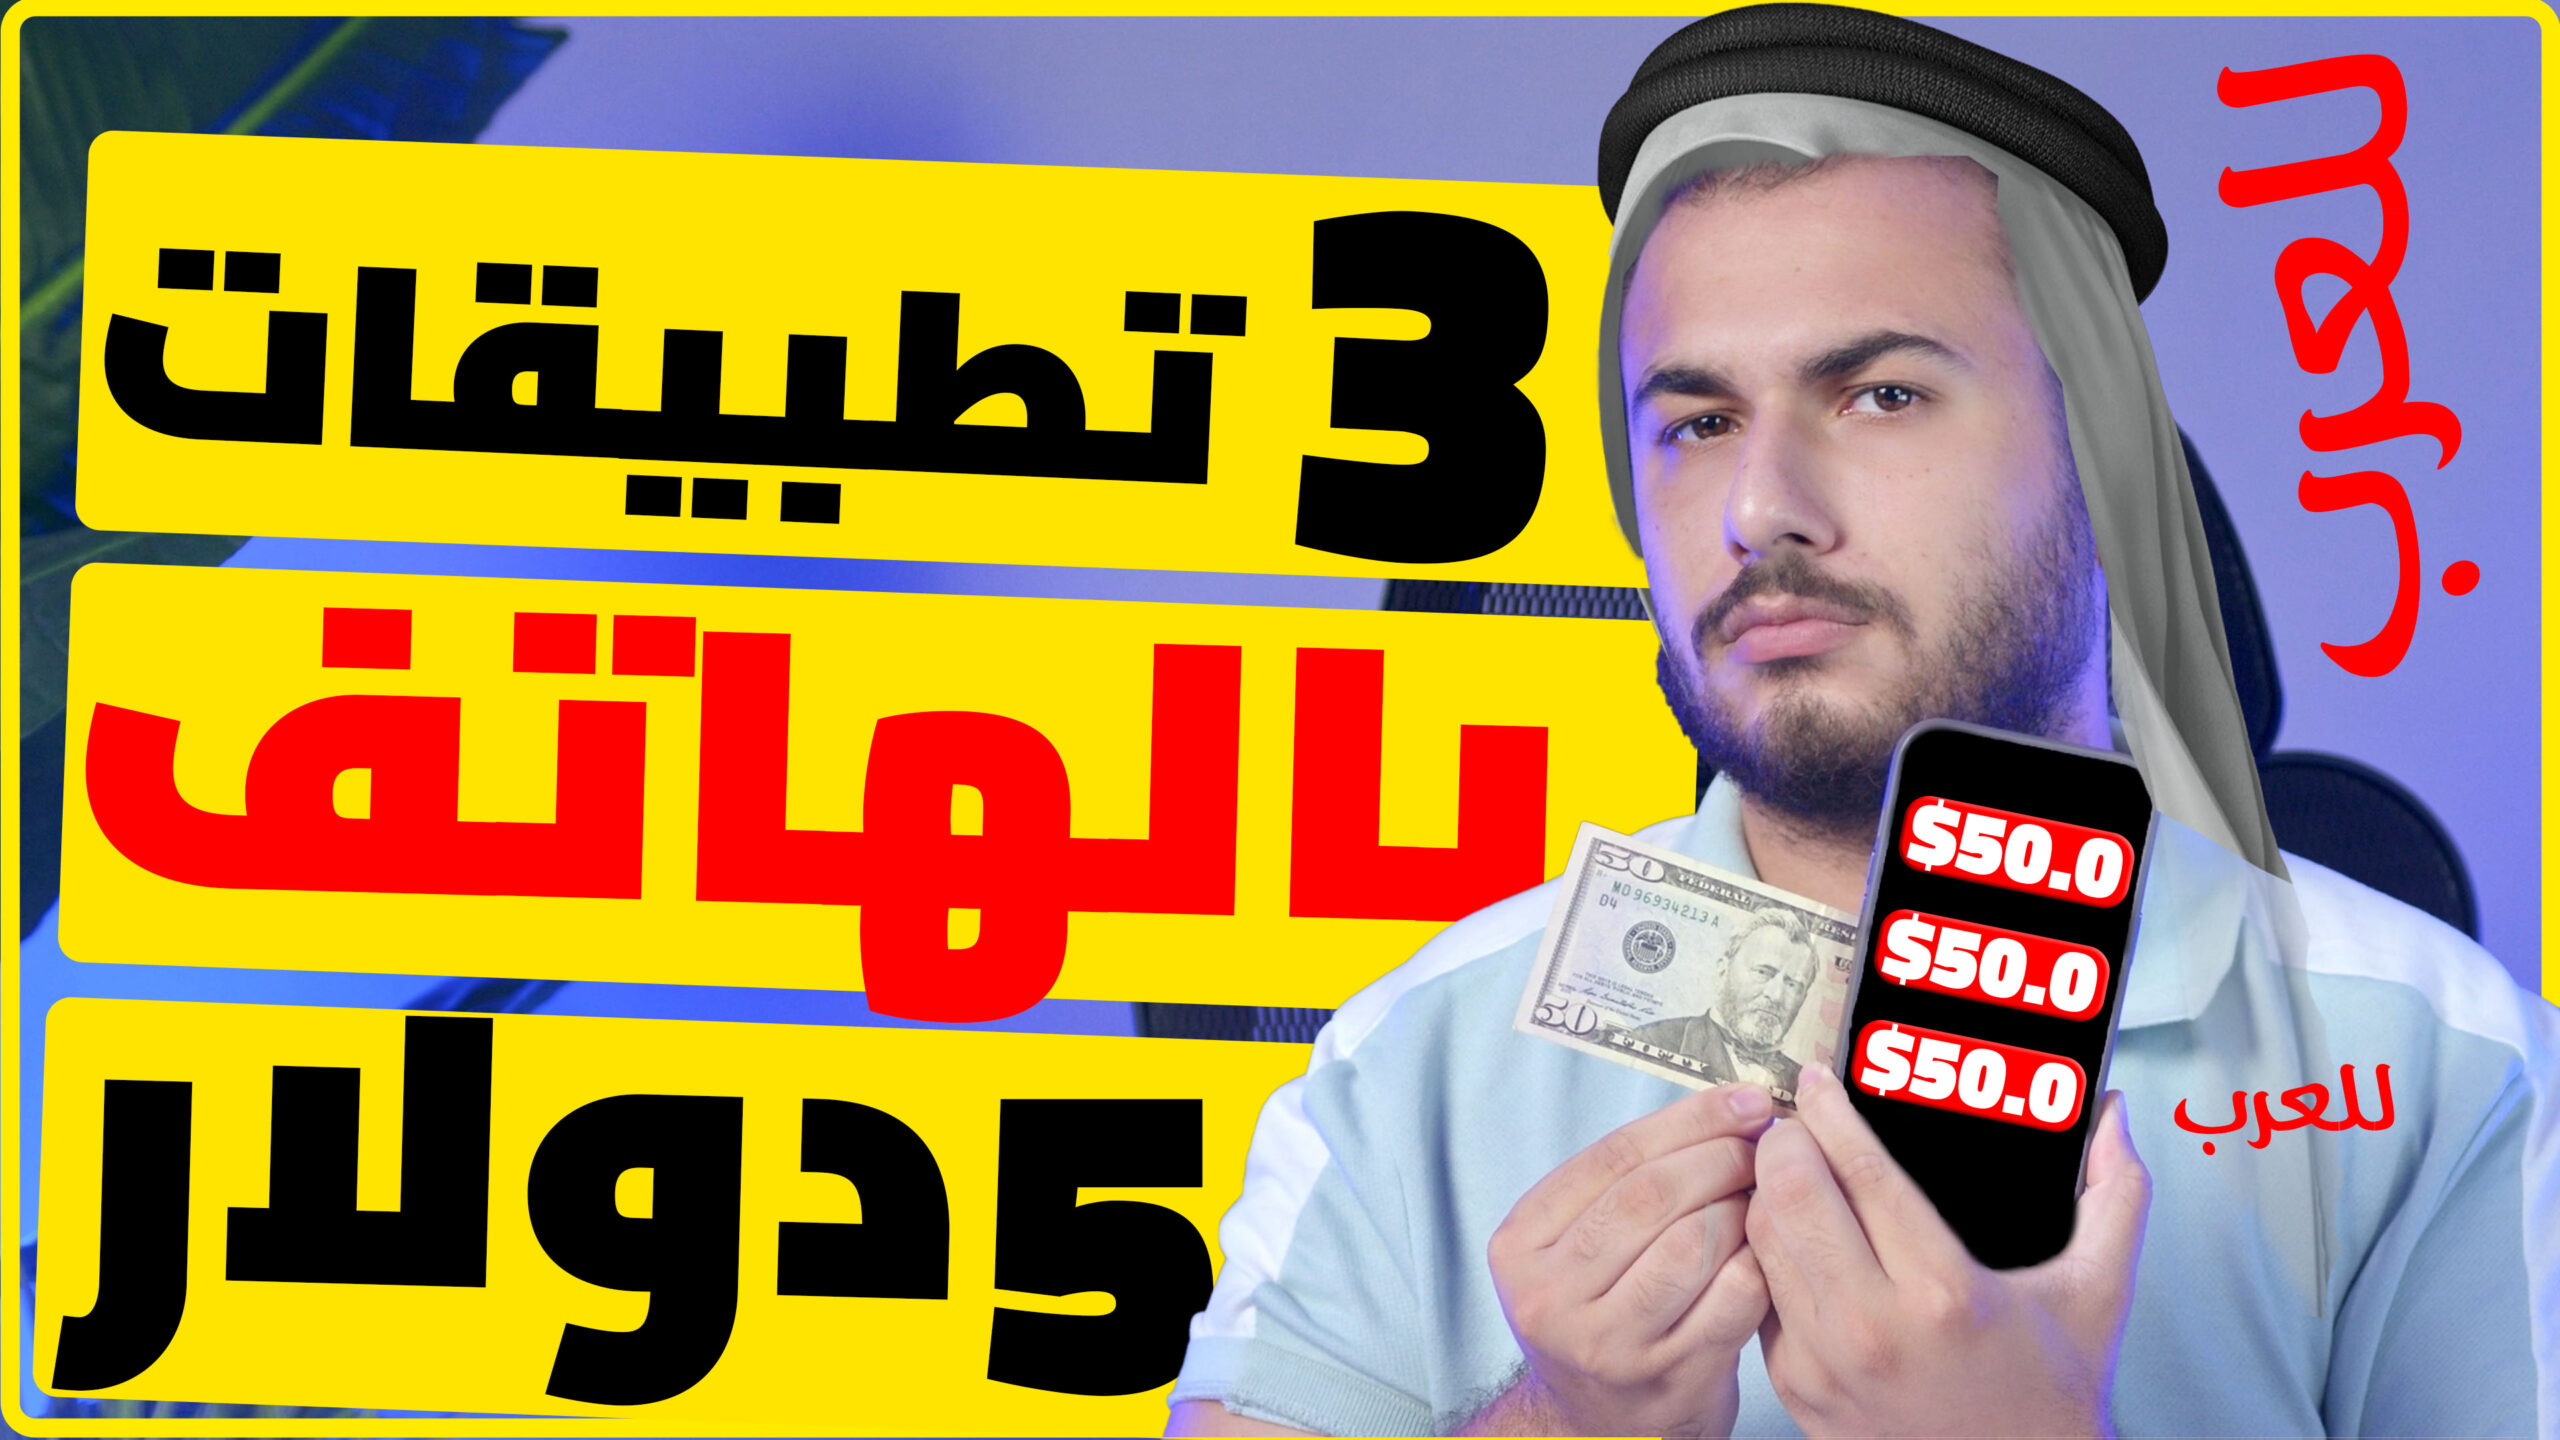 3 تطبيقات للعرب وبالهاتف فقط 5$ دولار كل يوم | الربح من الانترنت 2023 للمبتدئين بدون راس مال